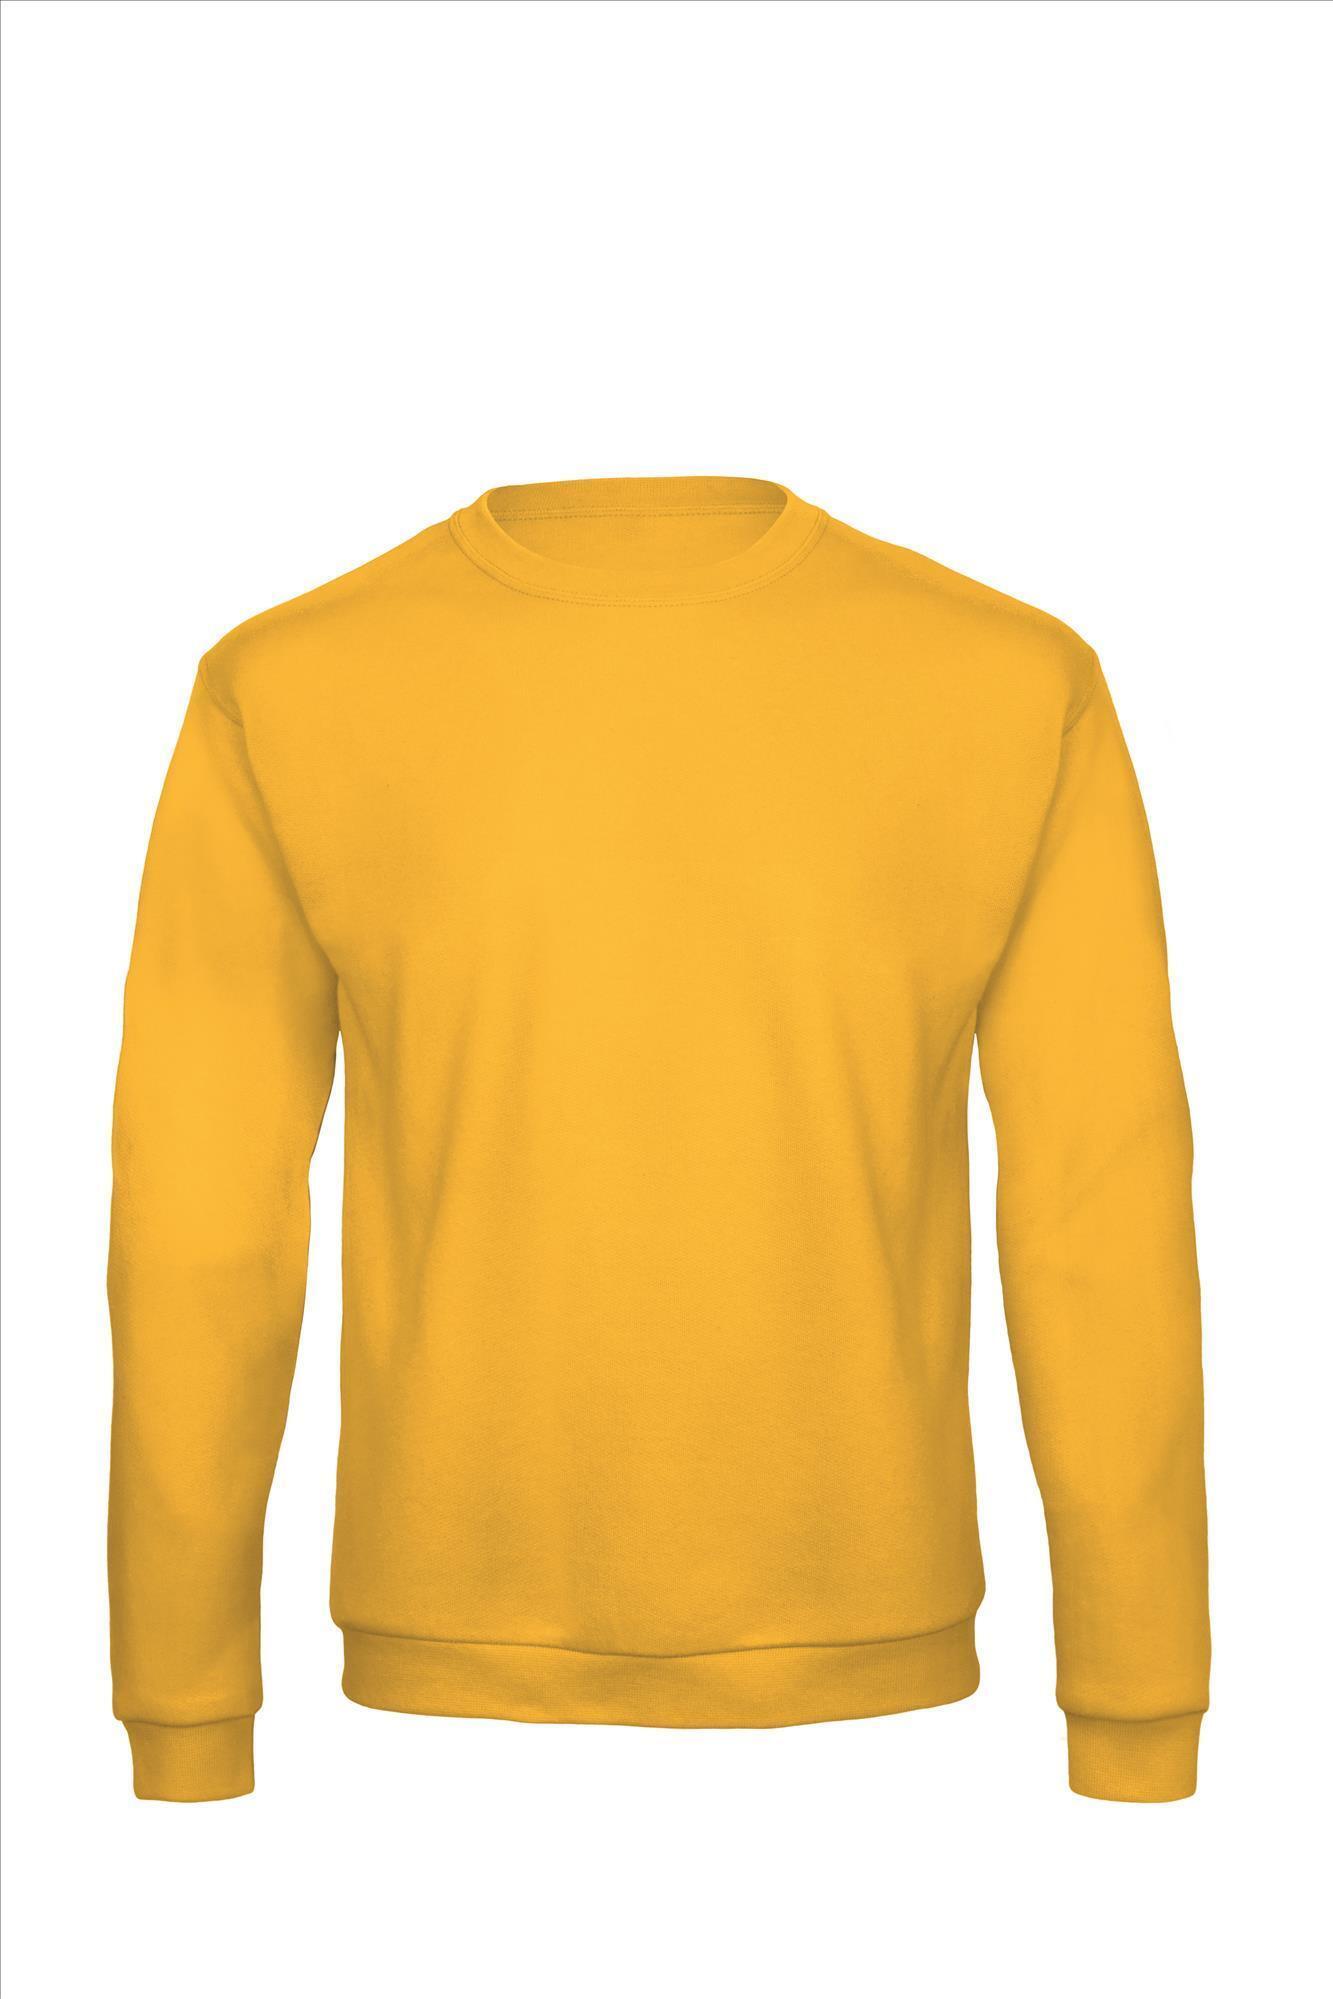 Sweater voor mannen budget goud geel